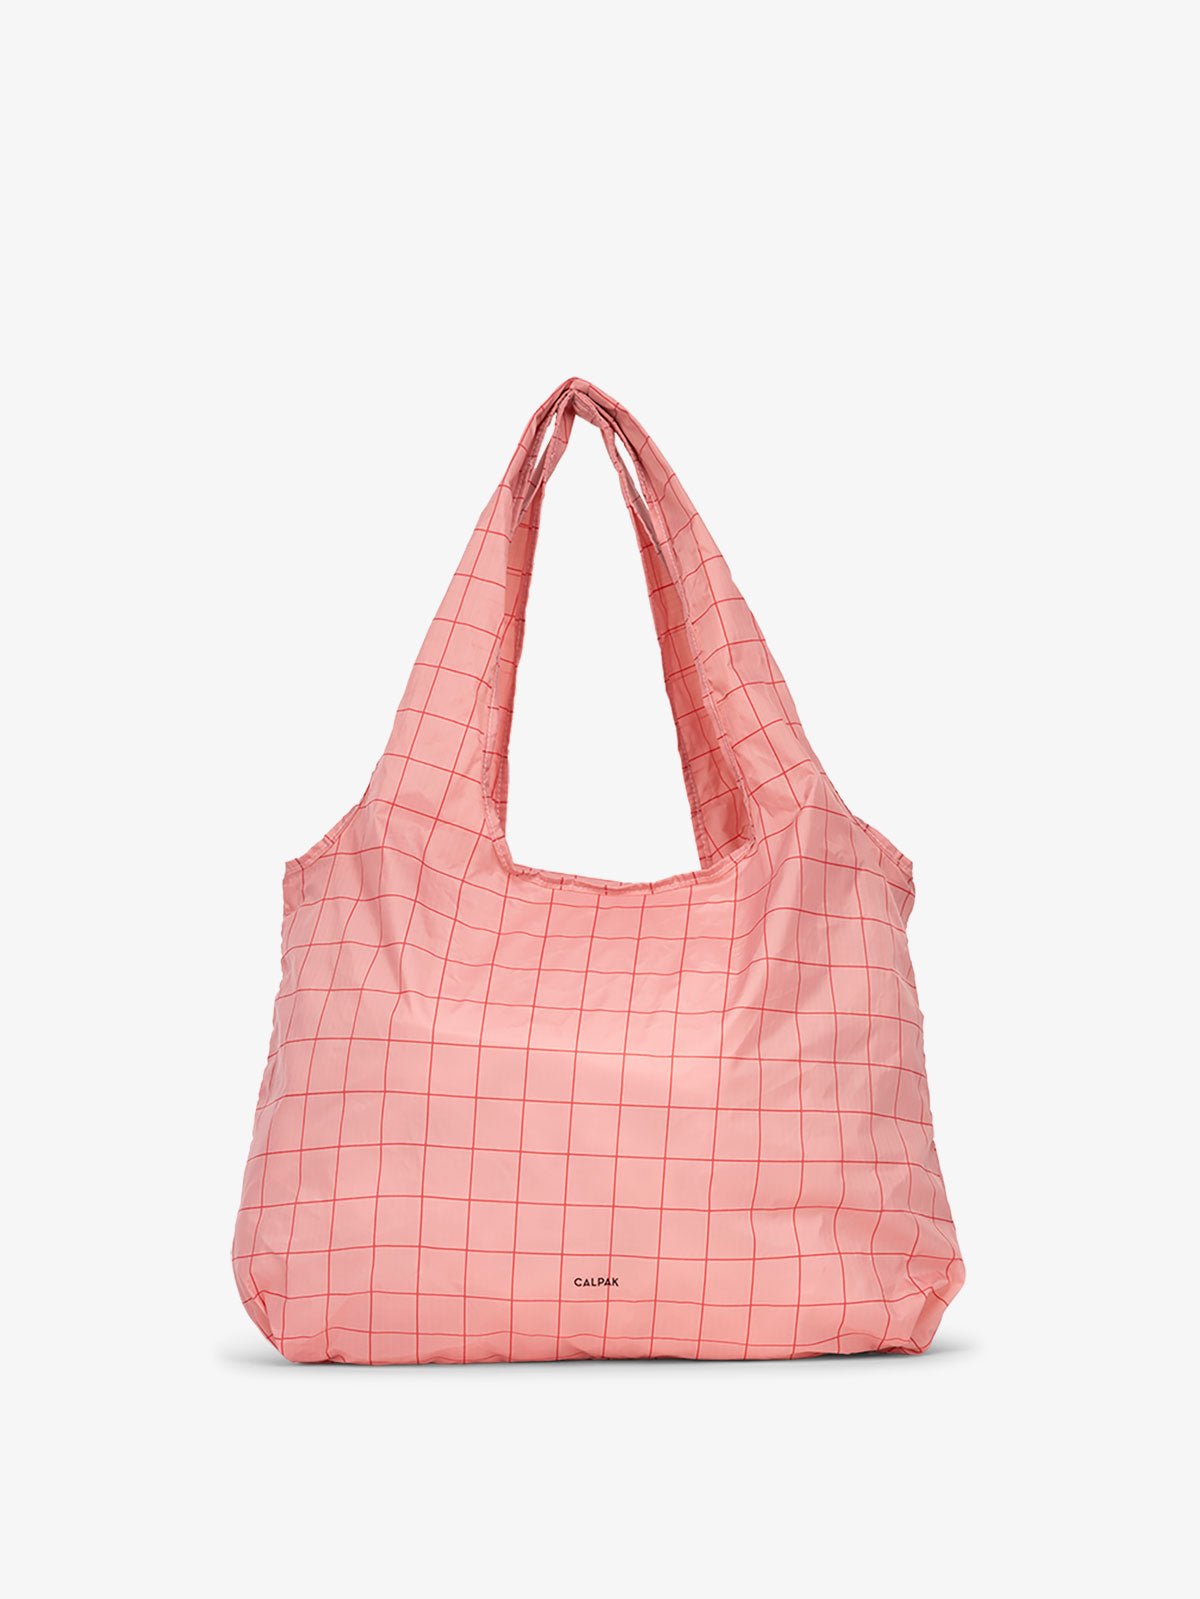 CALPAK Compakt tote bag in pink grid